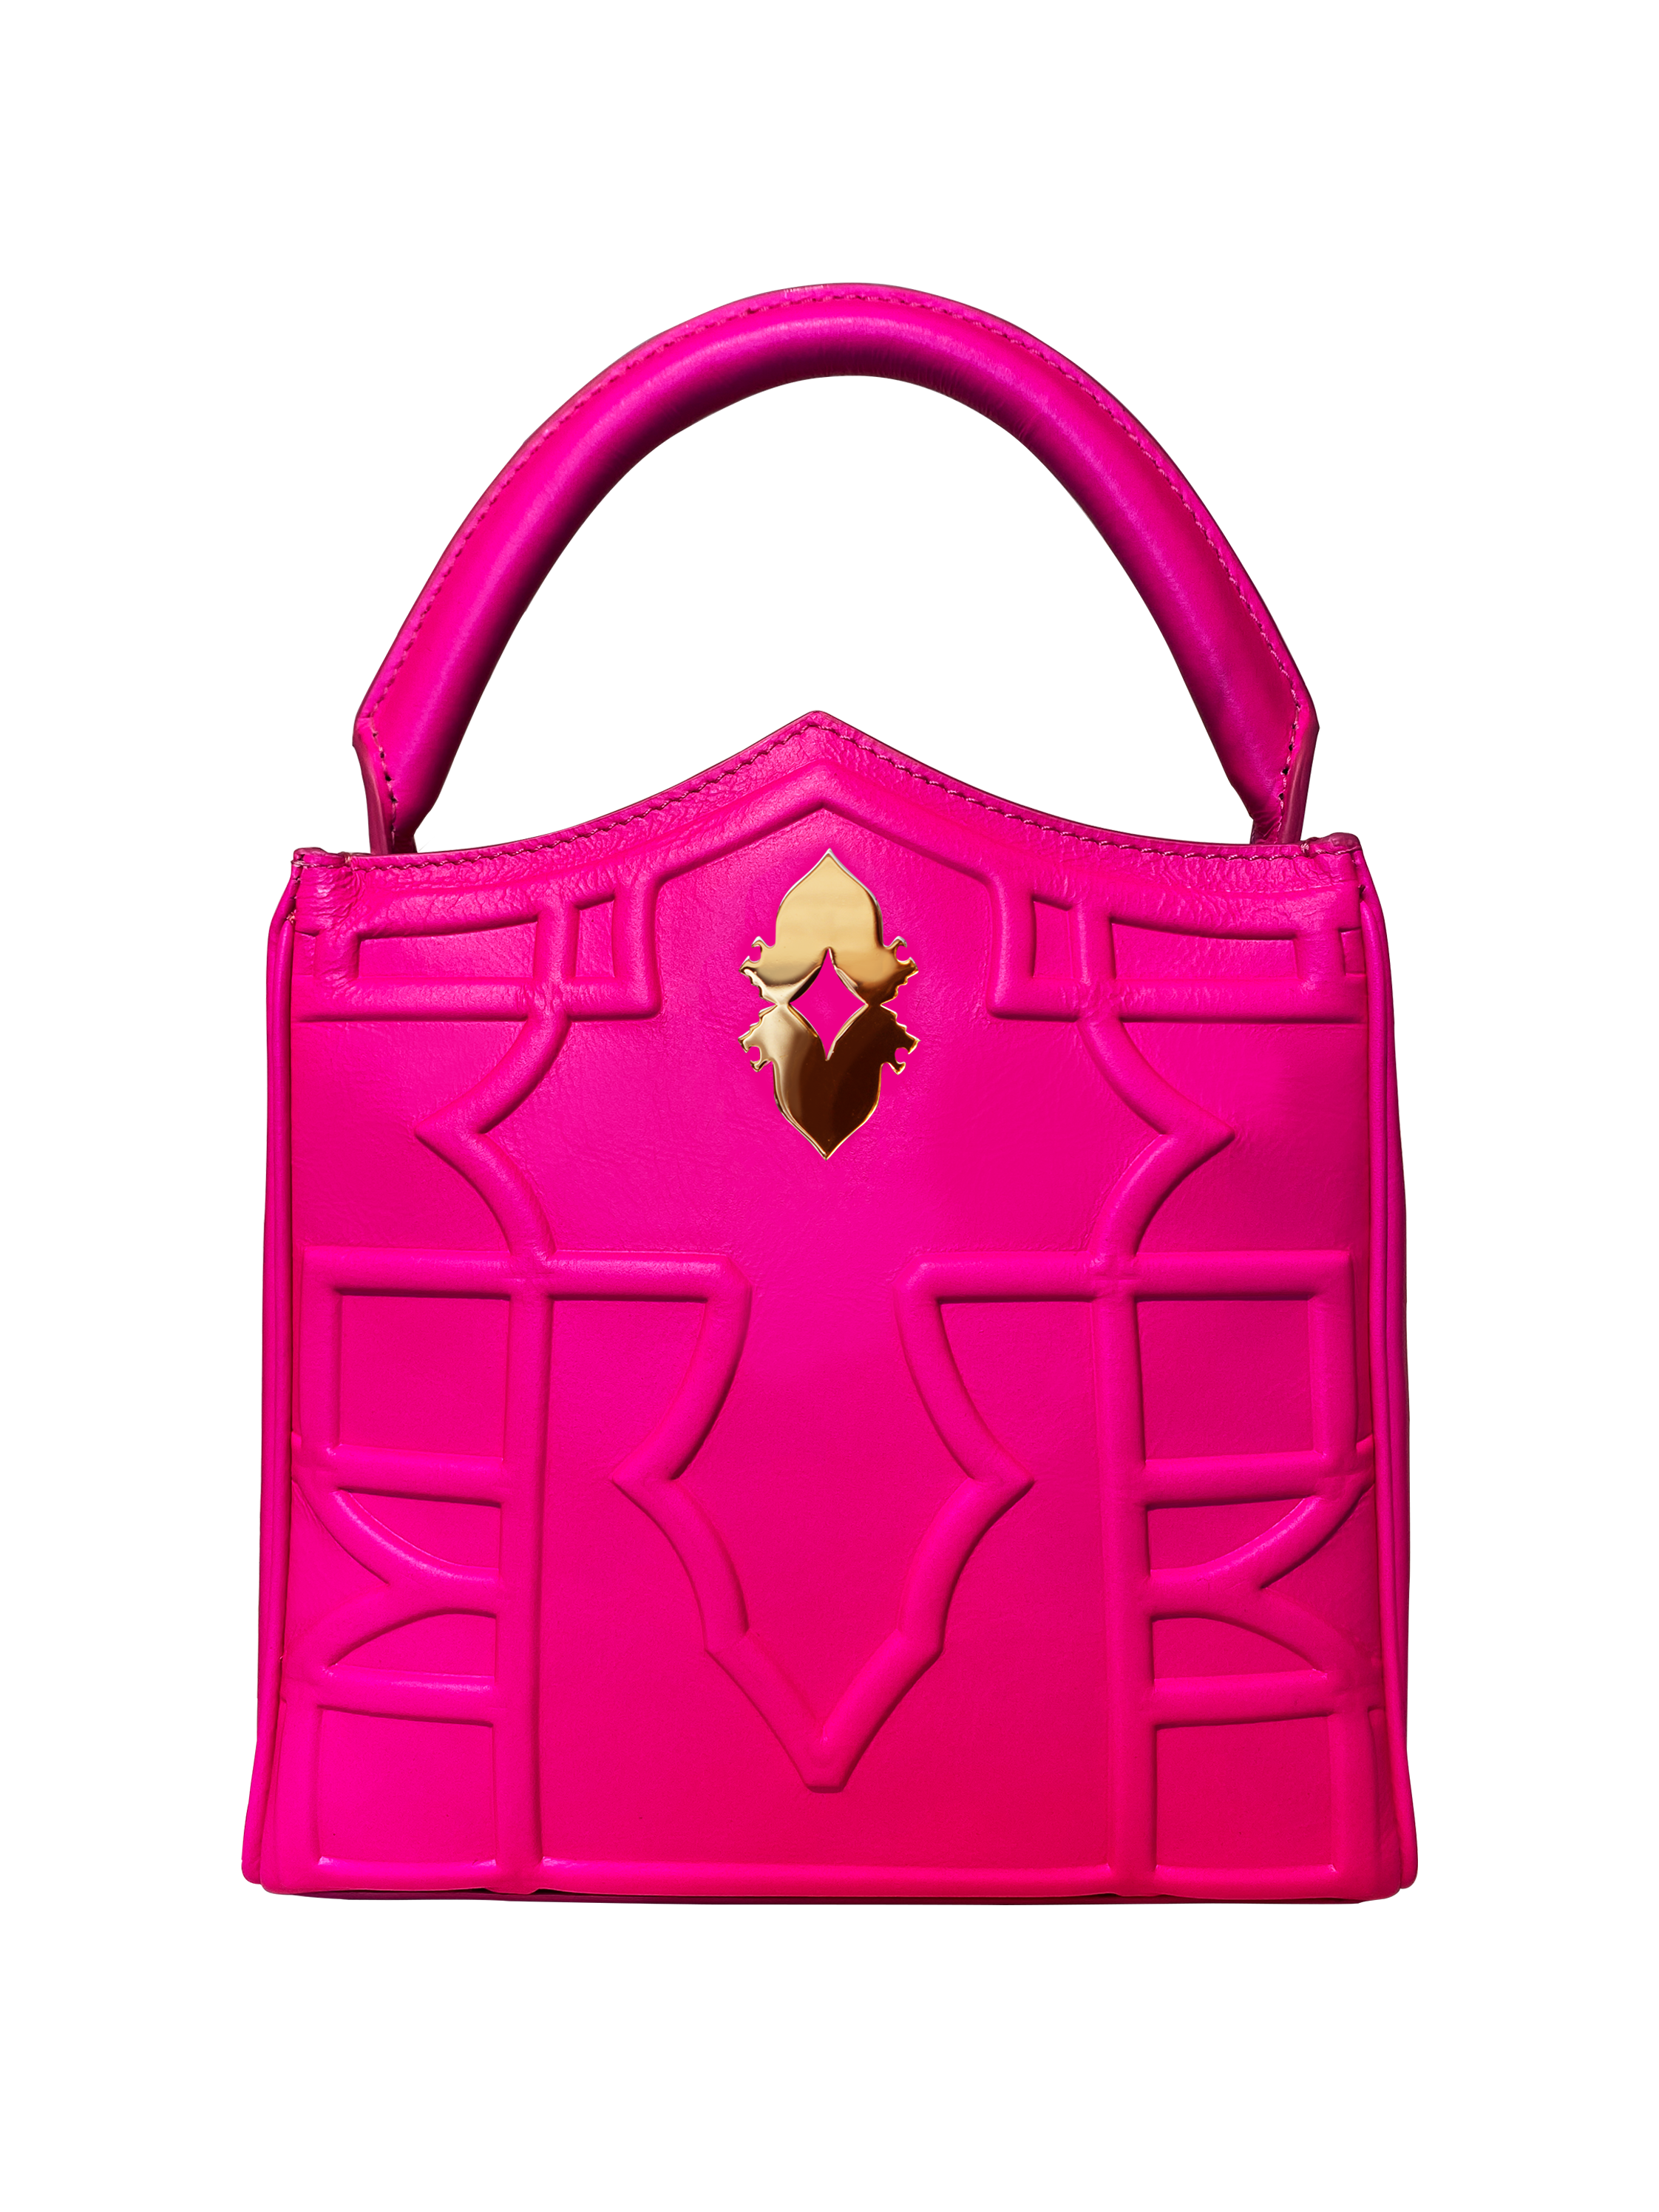 Valentino red backpack - Gem